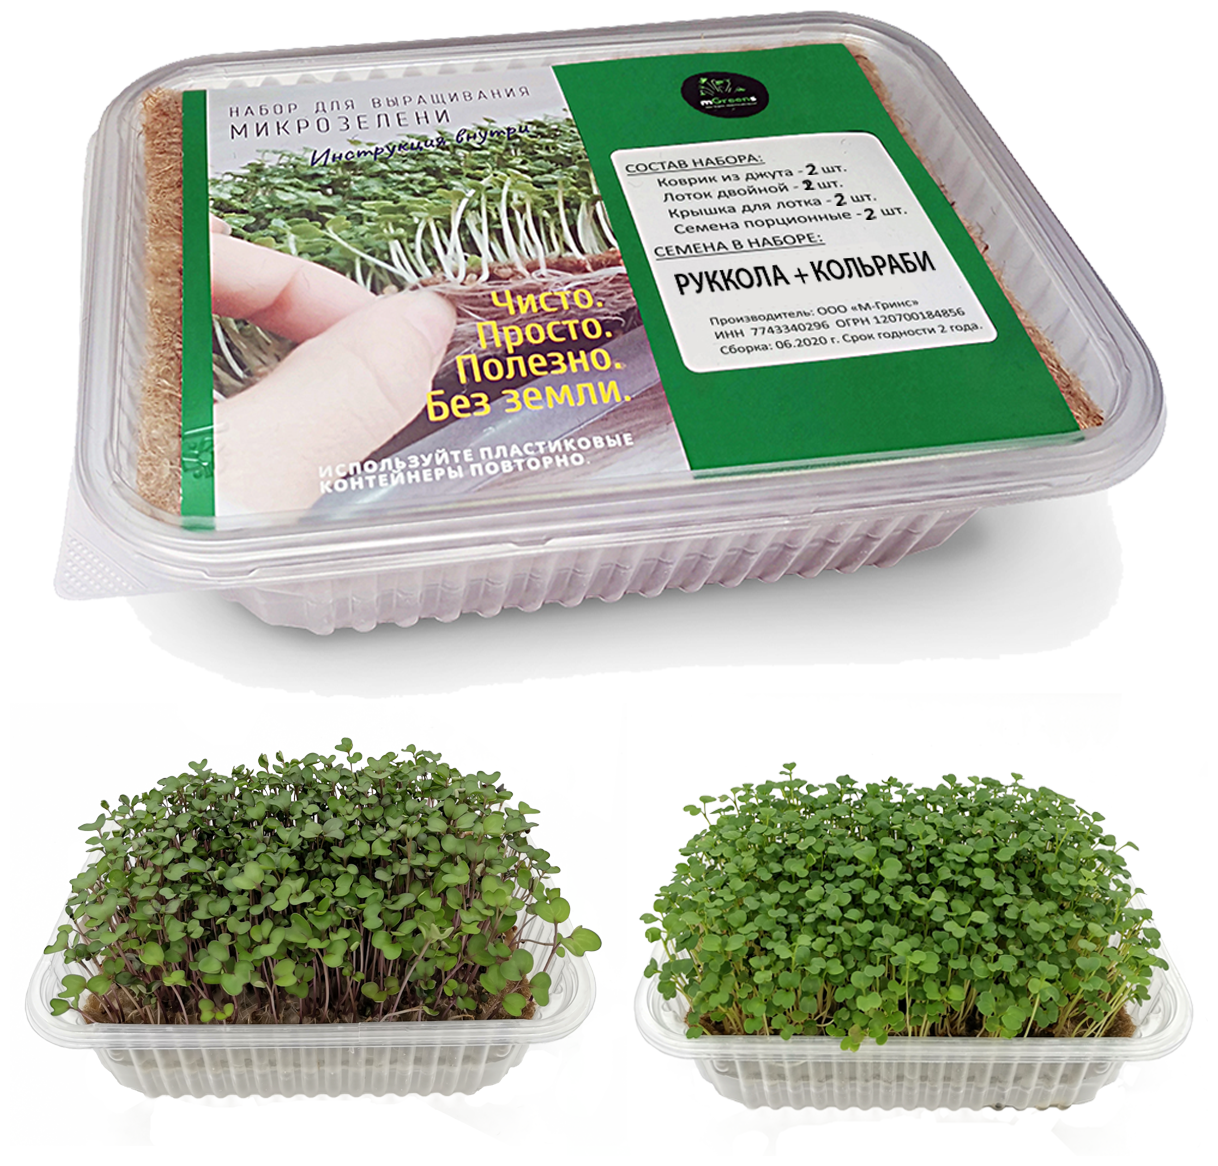 Микрозелень. Руккола + Кольраби - два урожая микрозелени из одного набора. Набор для выращивания микрозелени mGreens.